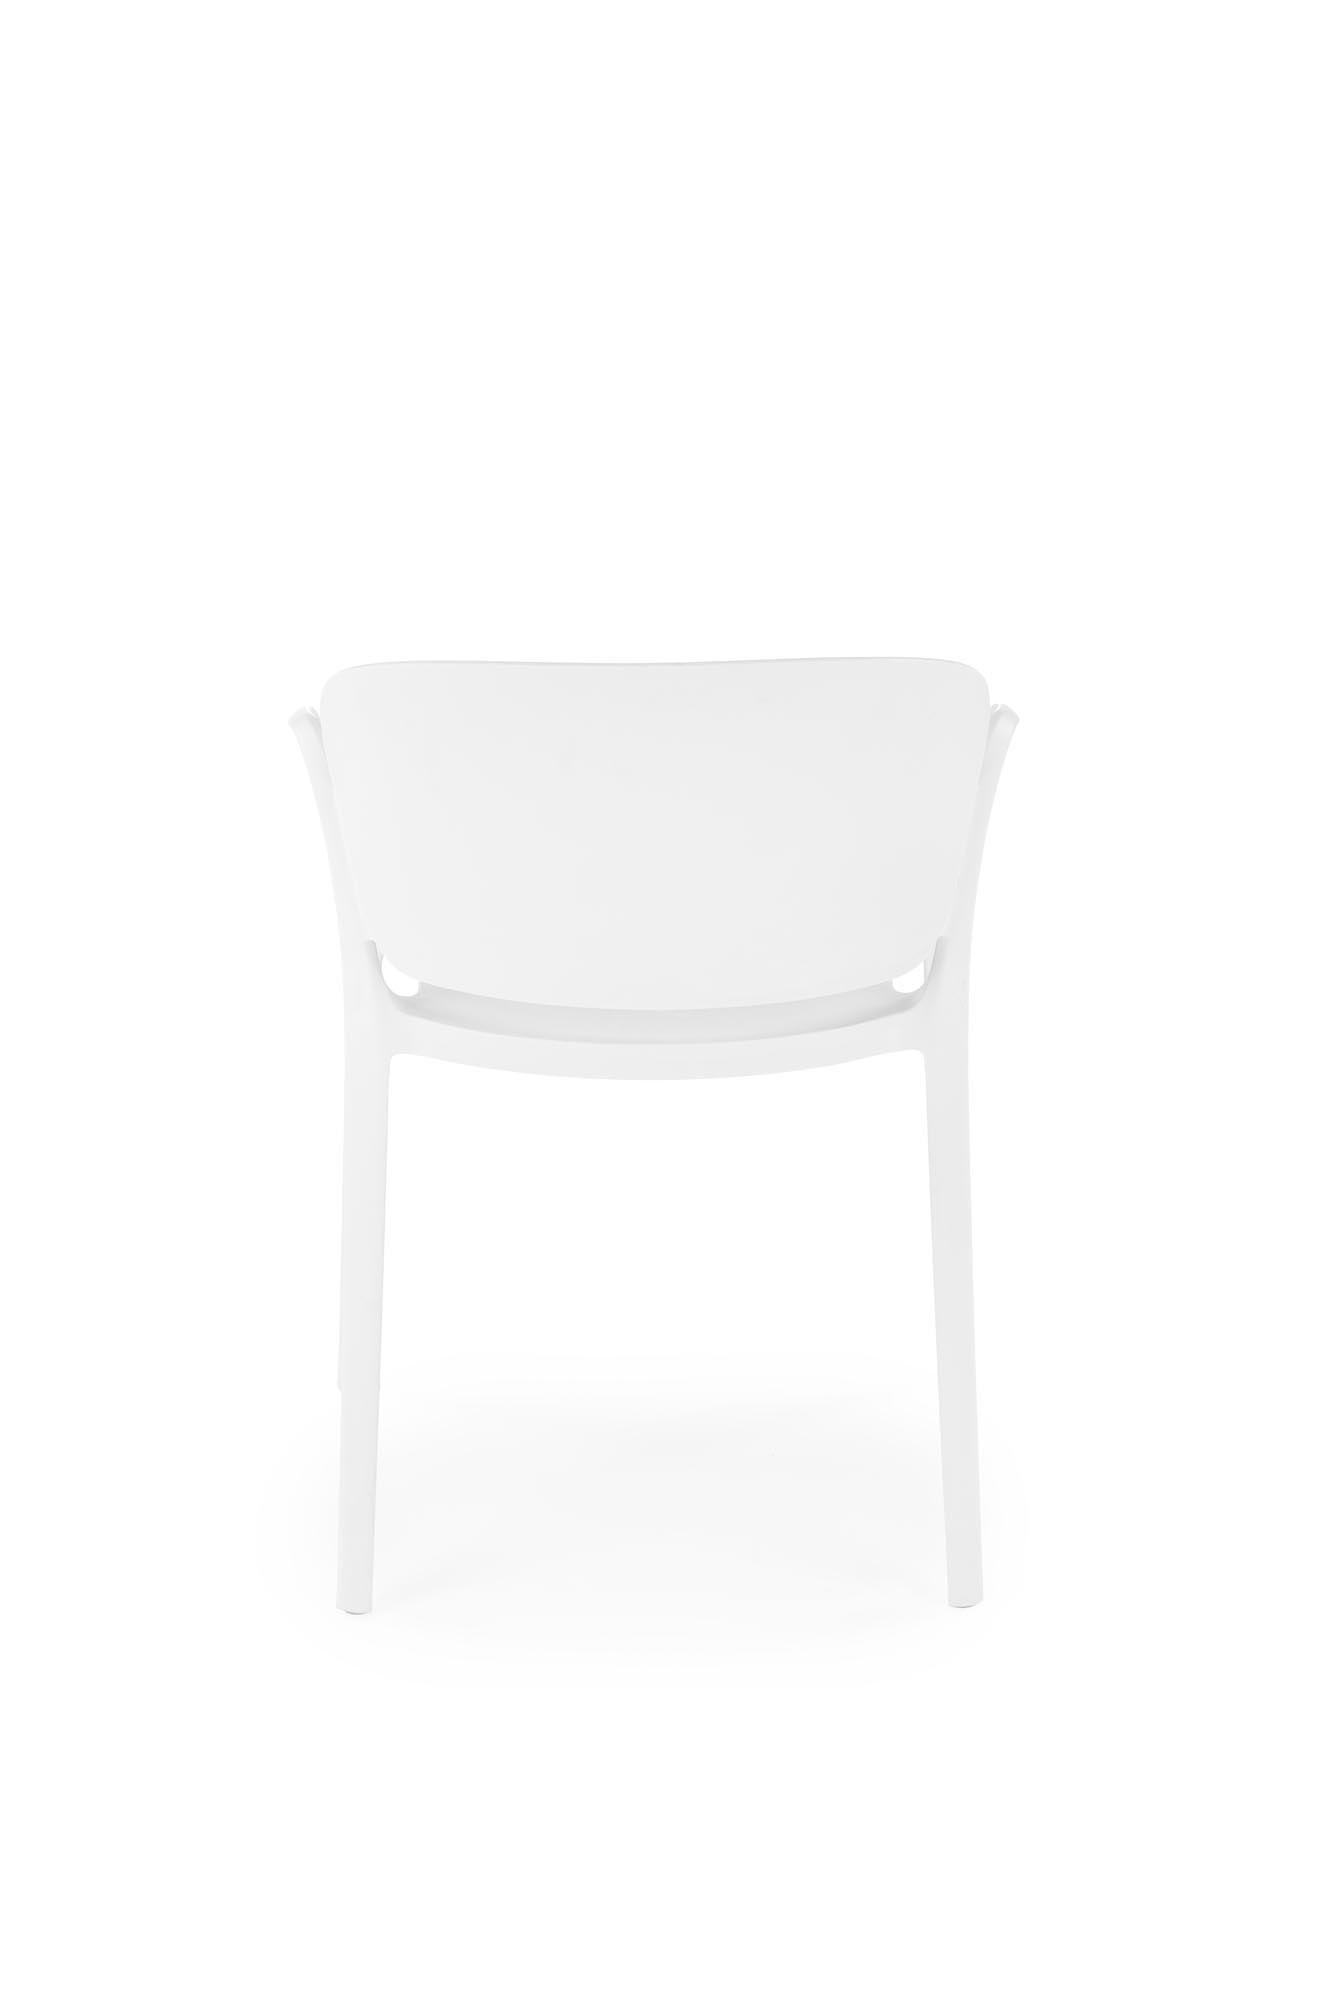 Scaune din plastic K491  Alb (1p=4buc) Židle z tworzywa sztucznego k491 - Alb